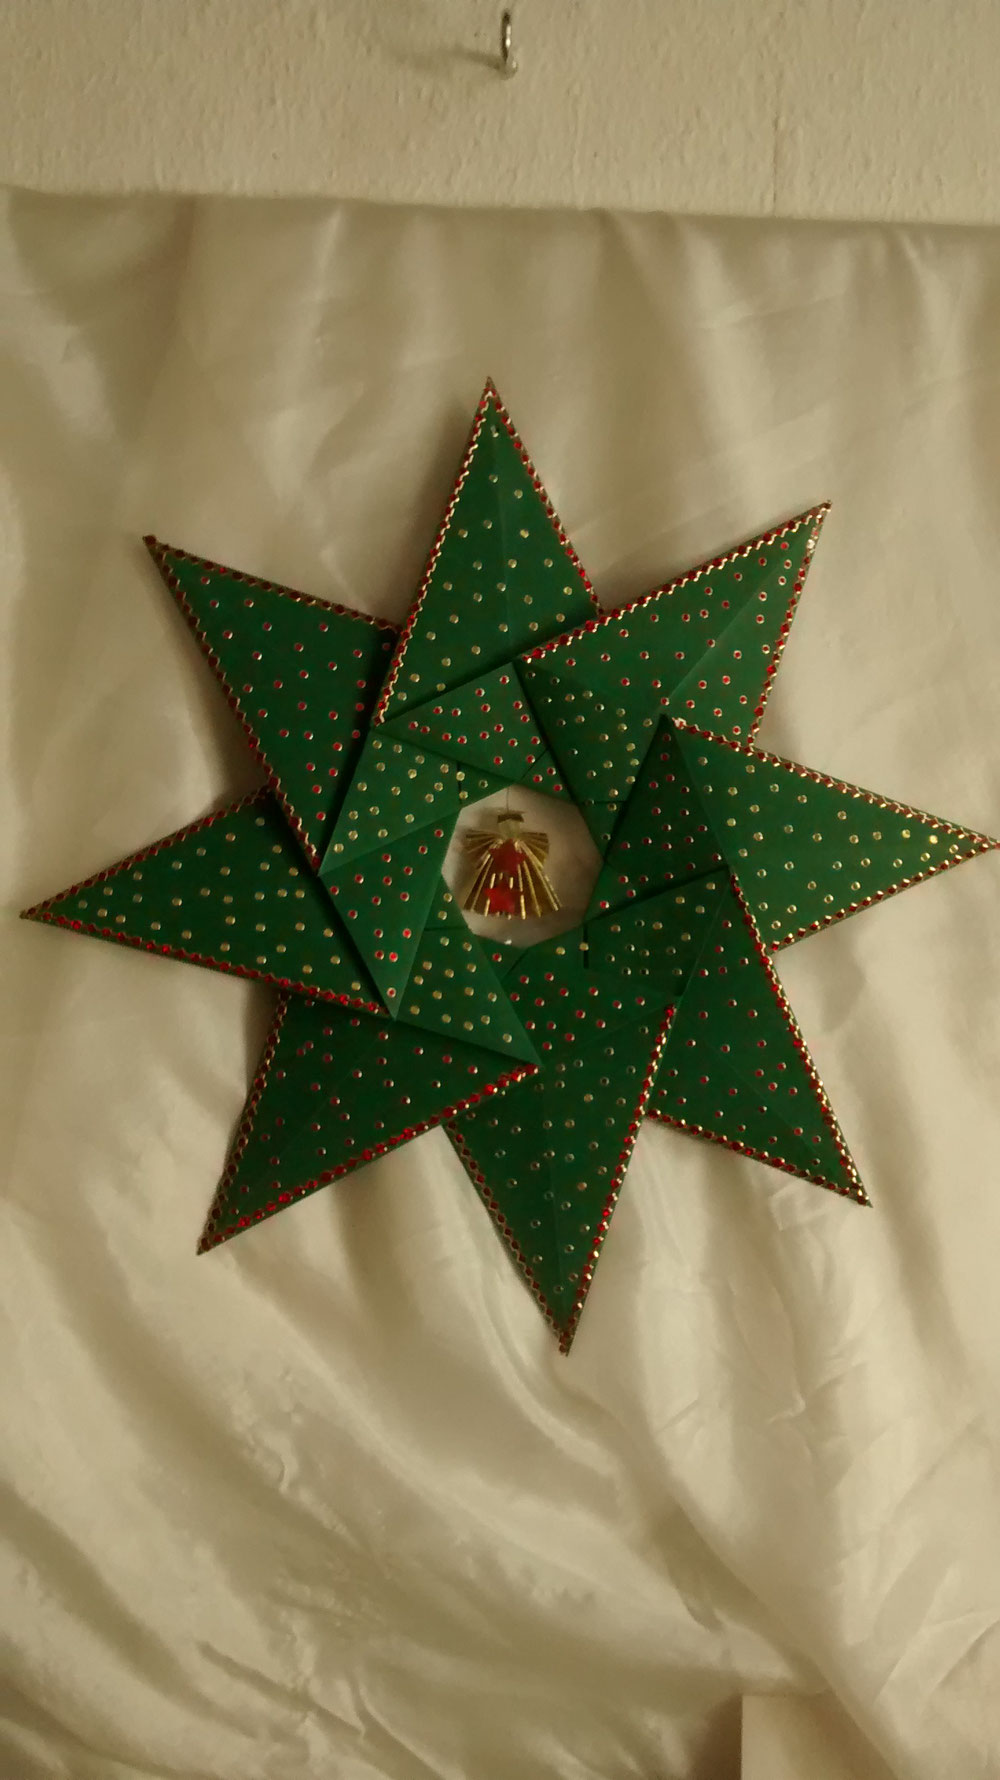 Stern Nr.05. ) Grüner Origami Stern reichhaltig mit Spiegel Punkten verziert.  Im Ausschnitt ist ein kleiner Engel  befestigt  6,50. €   Versandkosten. 3,90. €  Dieser Stern hat eine Größe von 31. cm im Durchmesser